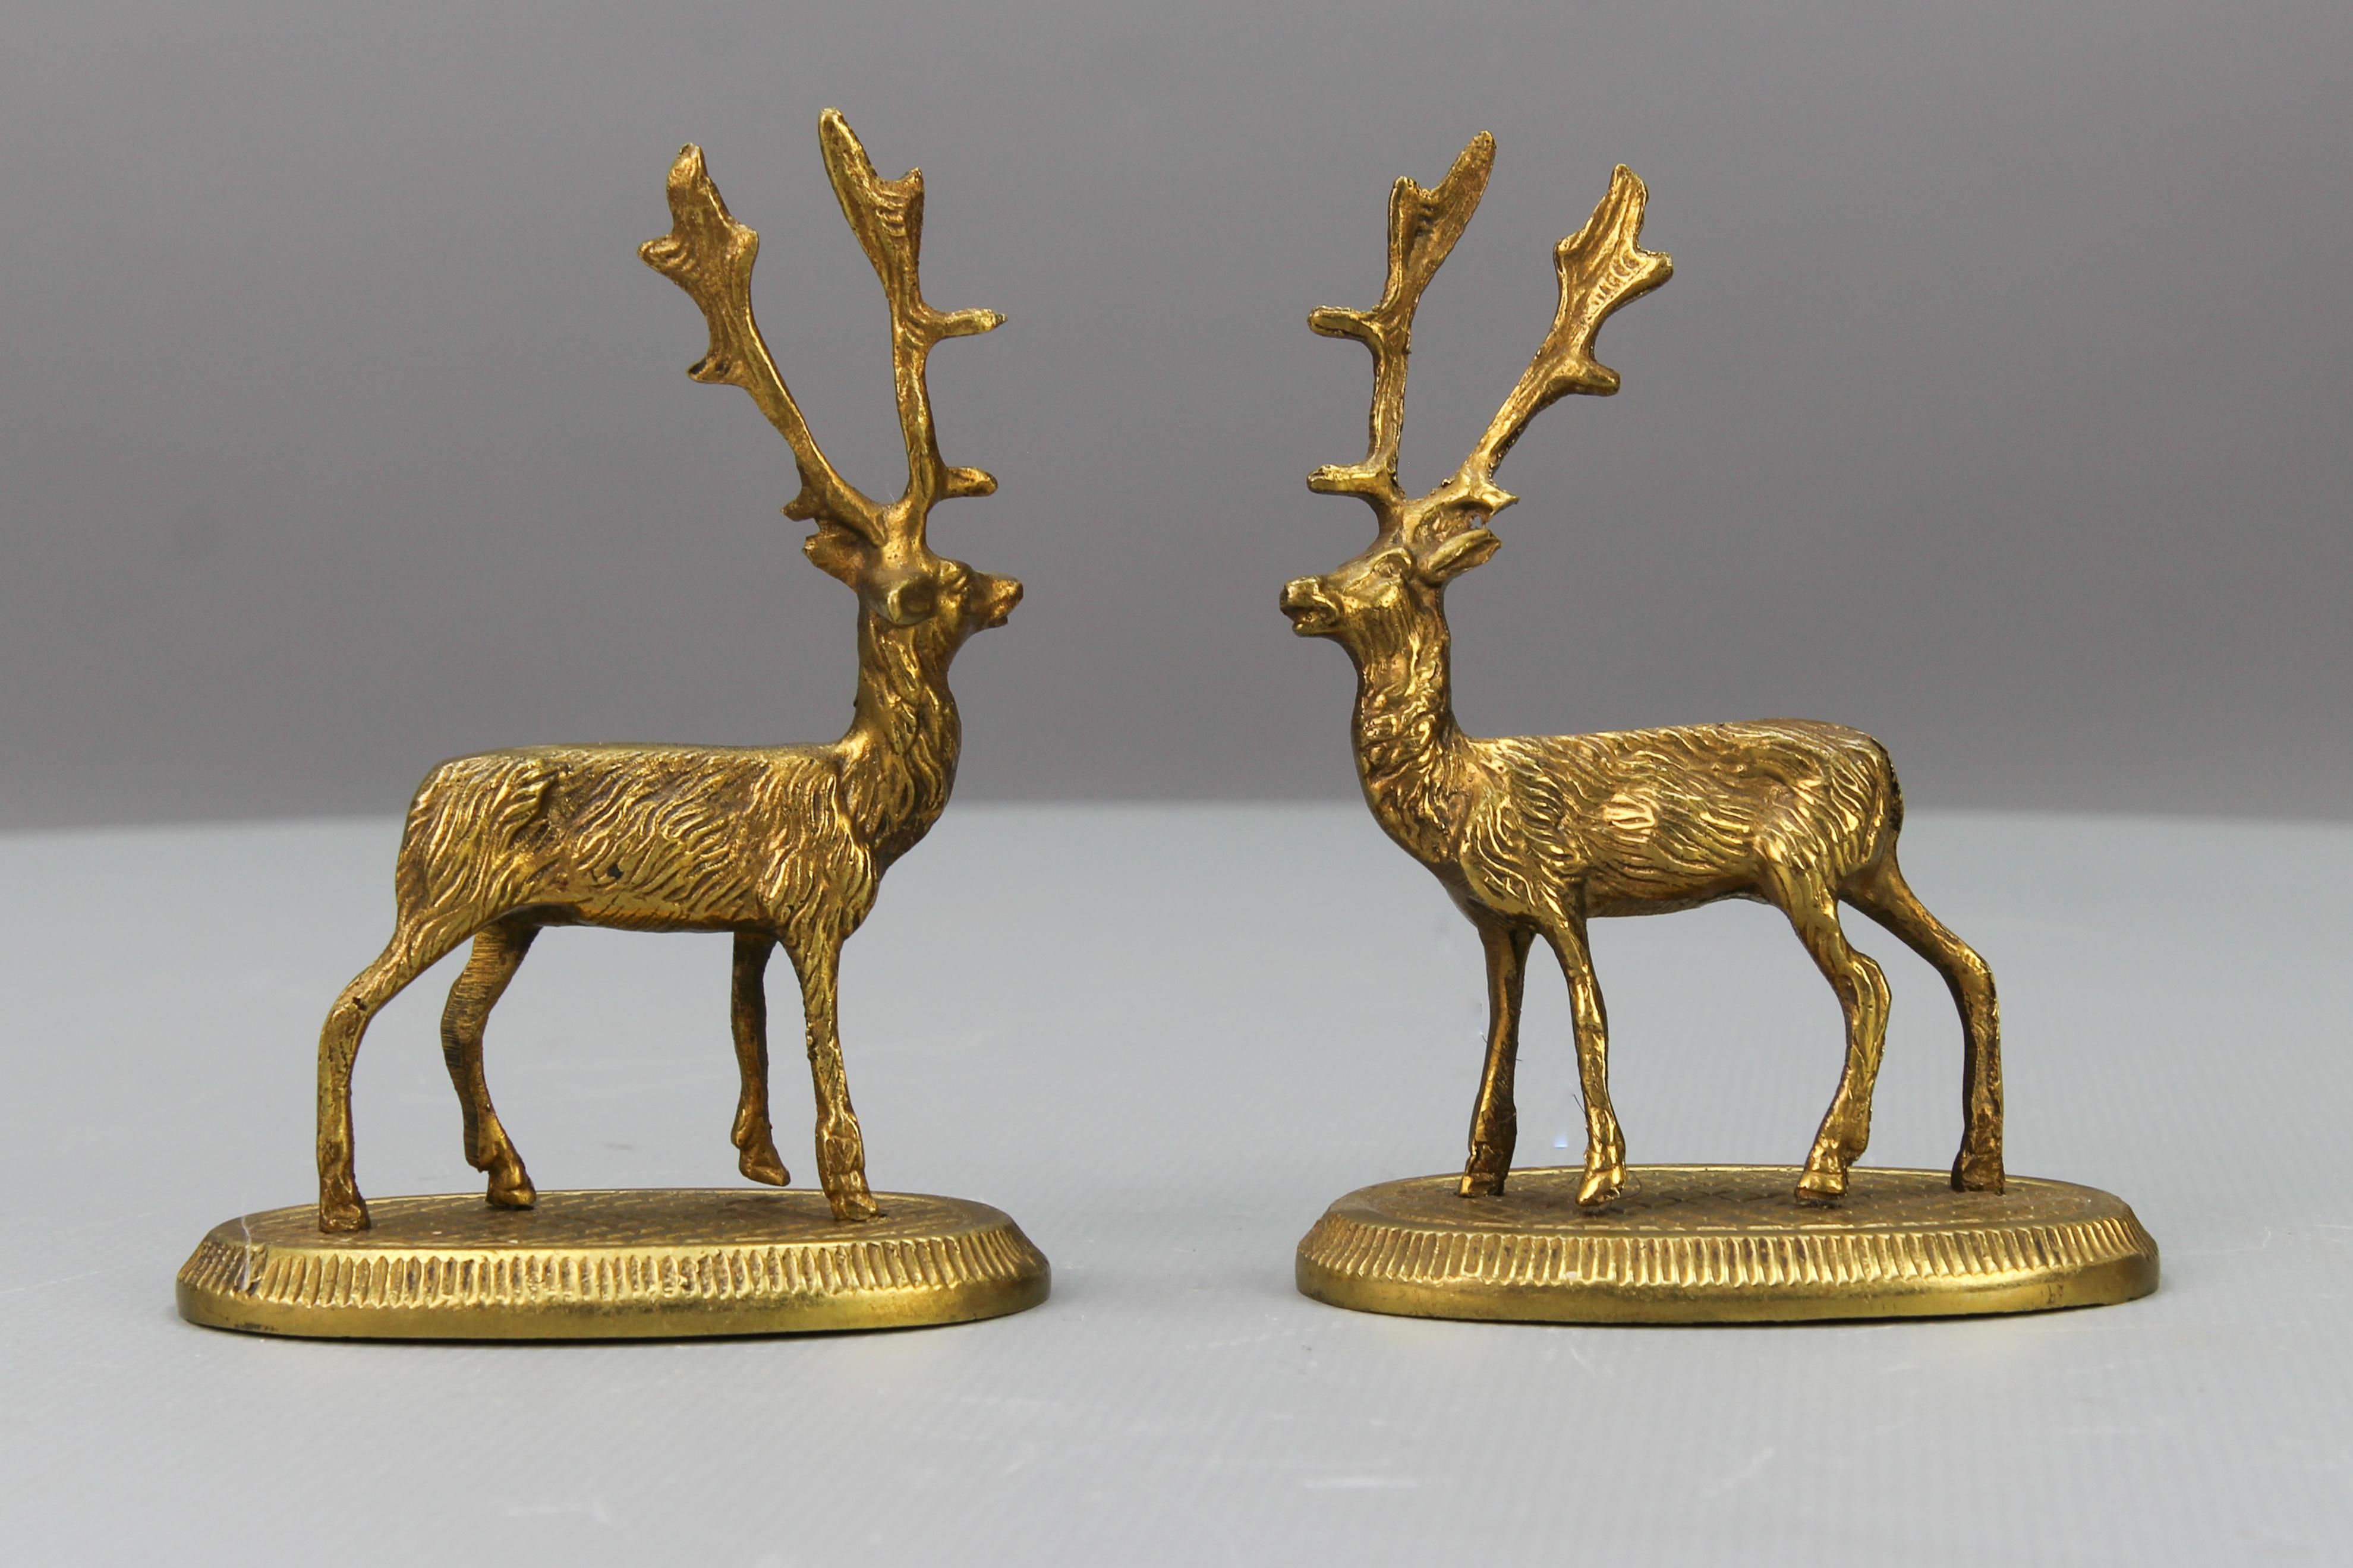 Kleine bronzene Hirschfiguren, bestehend aus zwei Stück, aus den 1950er Jahren. Es handelt sich um ein Paar kleine Hirschfiguren auf ovalen Sockeln. 
Die Skulpturen sind in gutem Zustand, mit leichten Alterungsspuren. 
Ihre Abmessungen sind wie